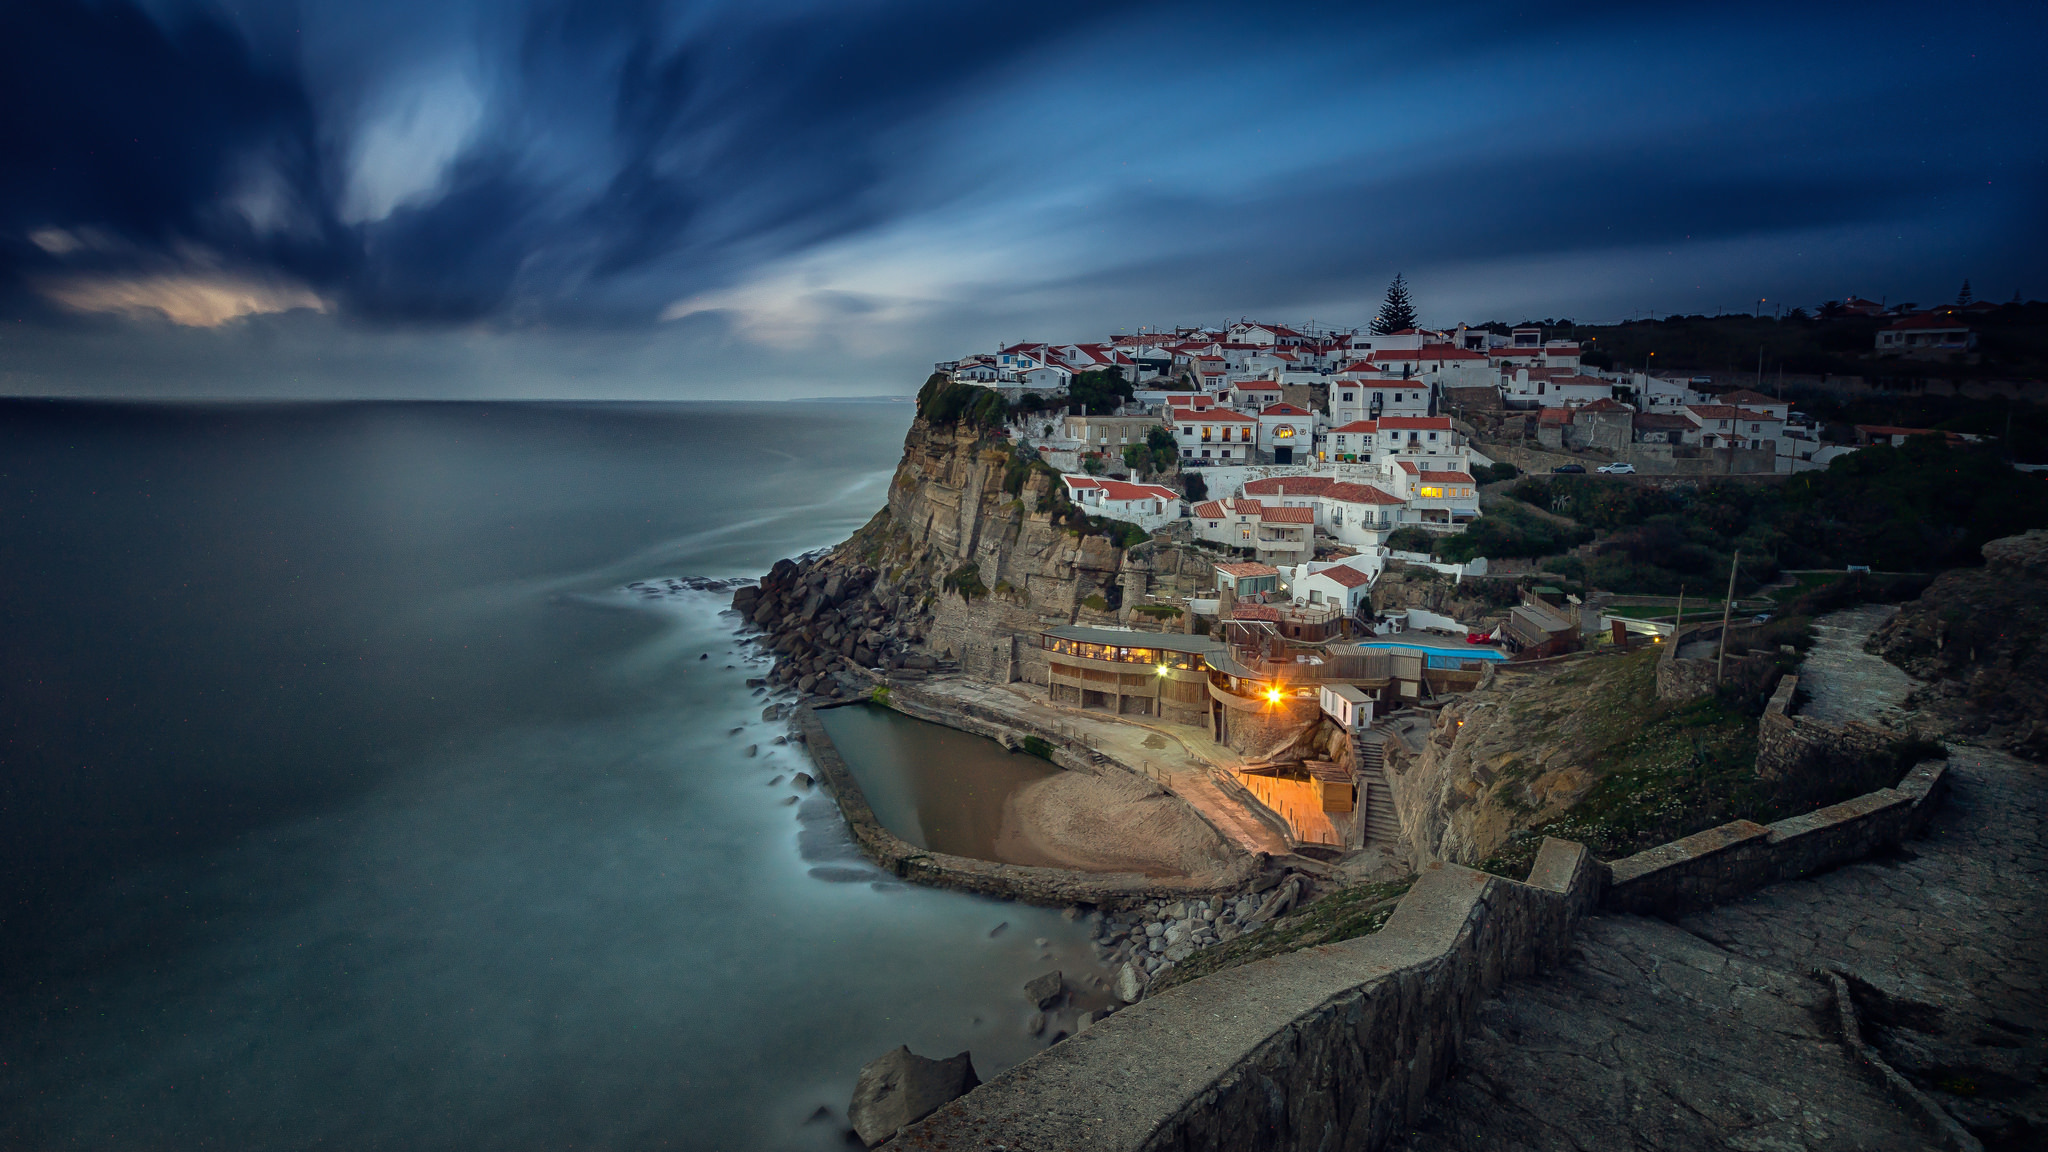 Landscape, azenhas do mar, portugal, seascape, города